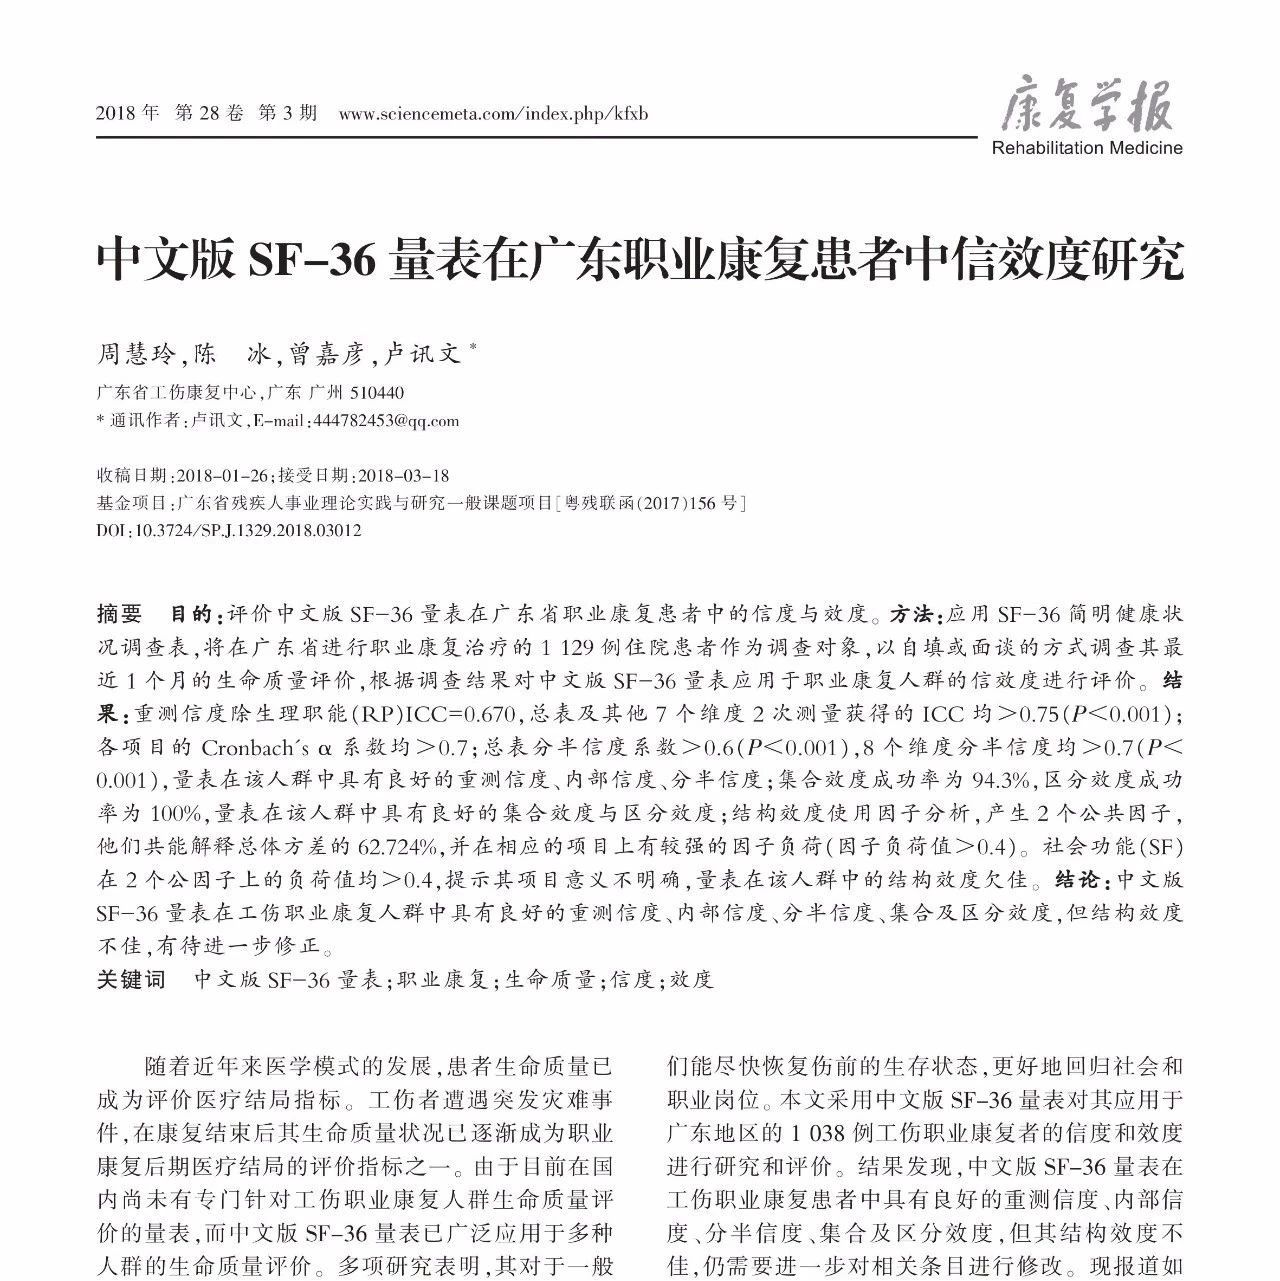 临床论著-周慧玲,陈冰等 中文版SF-36量表在广东职业康复患者中信效度研究